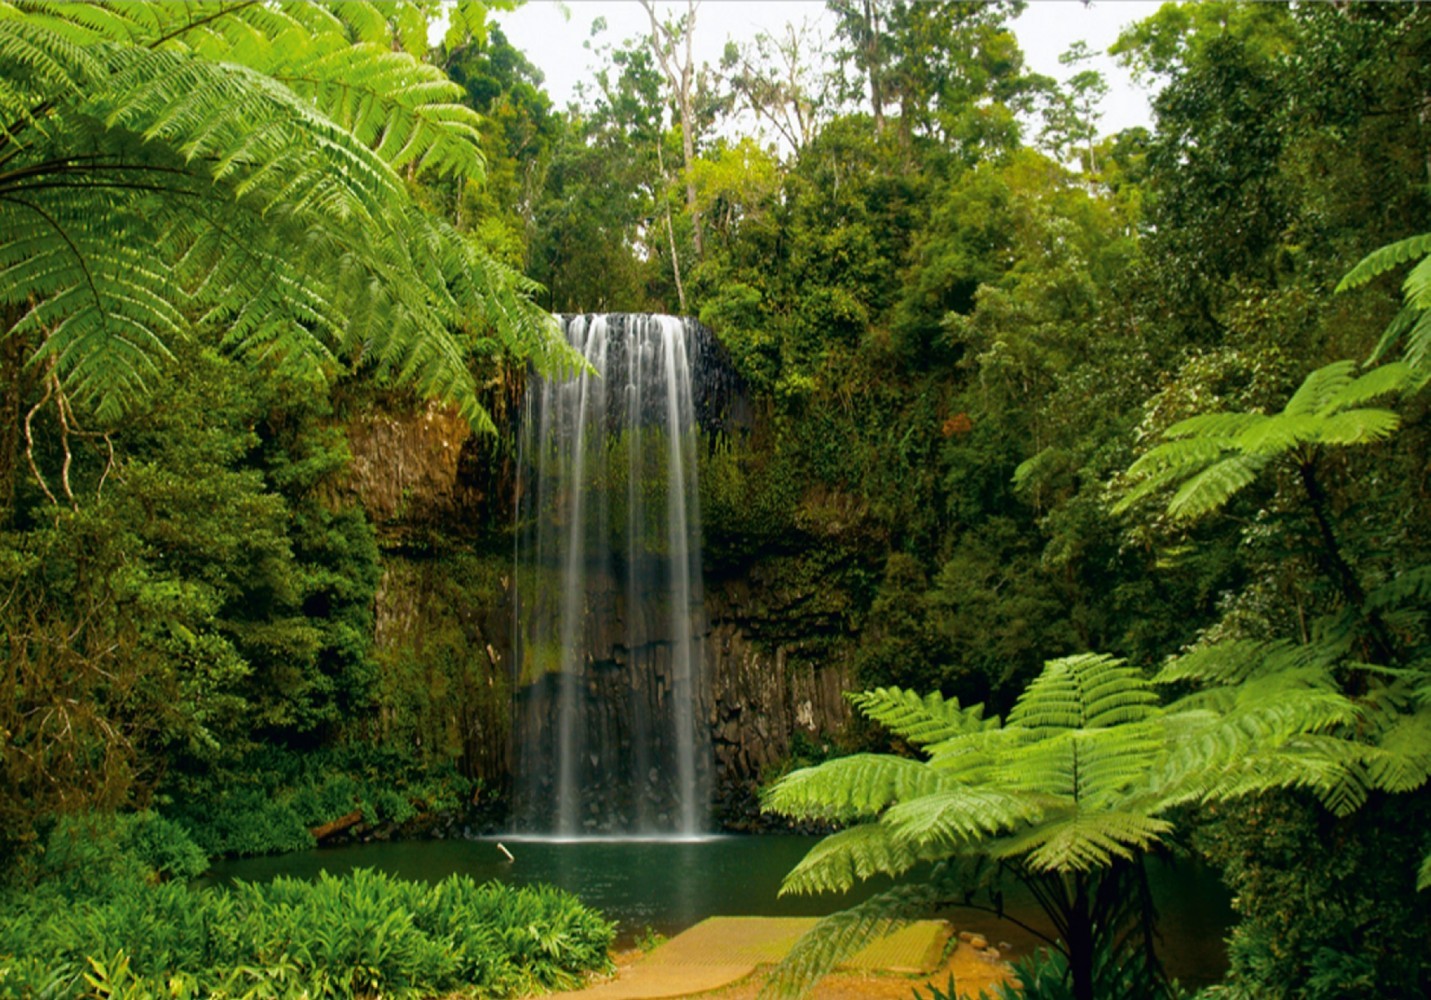 ジャングル壁紙壁画,滝,水資源,自然の風景,自然,水域